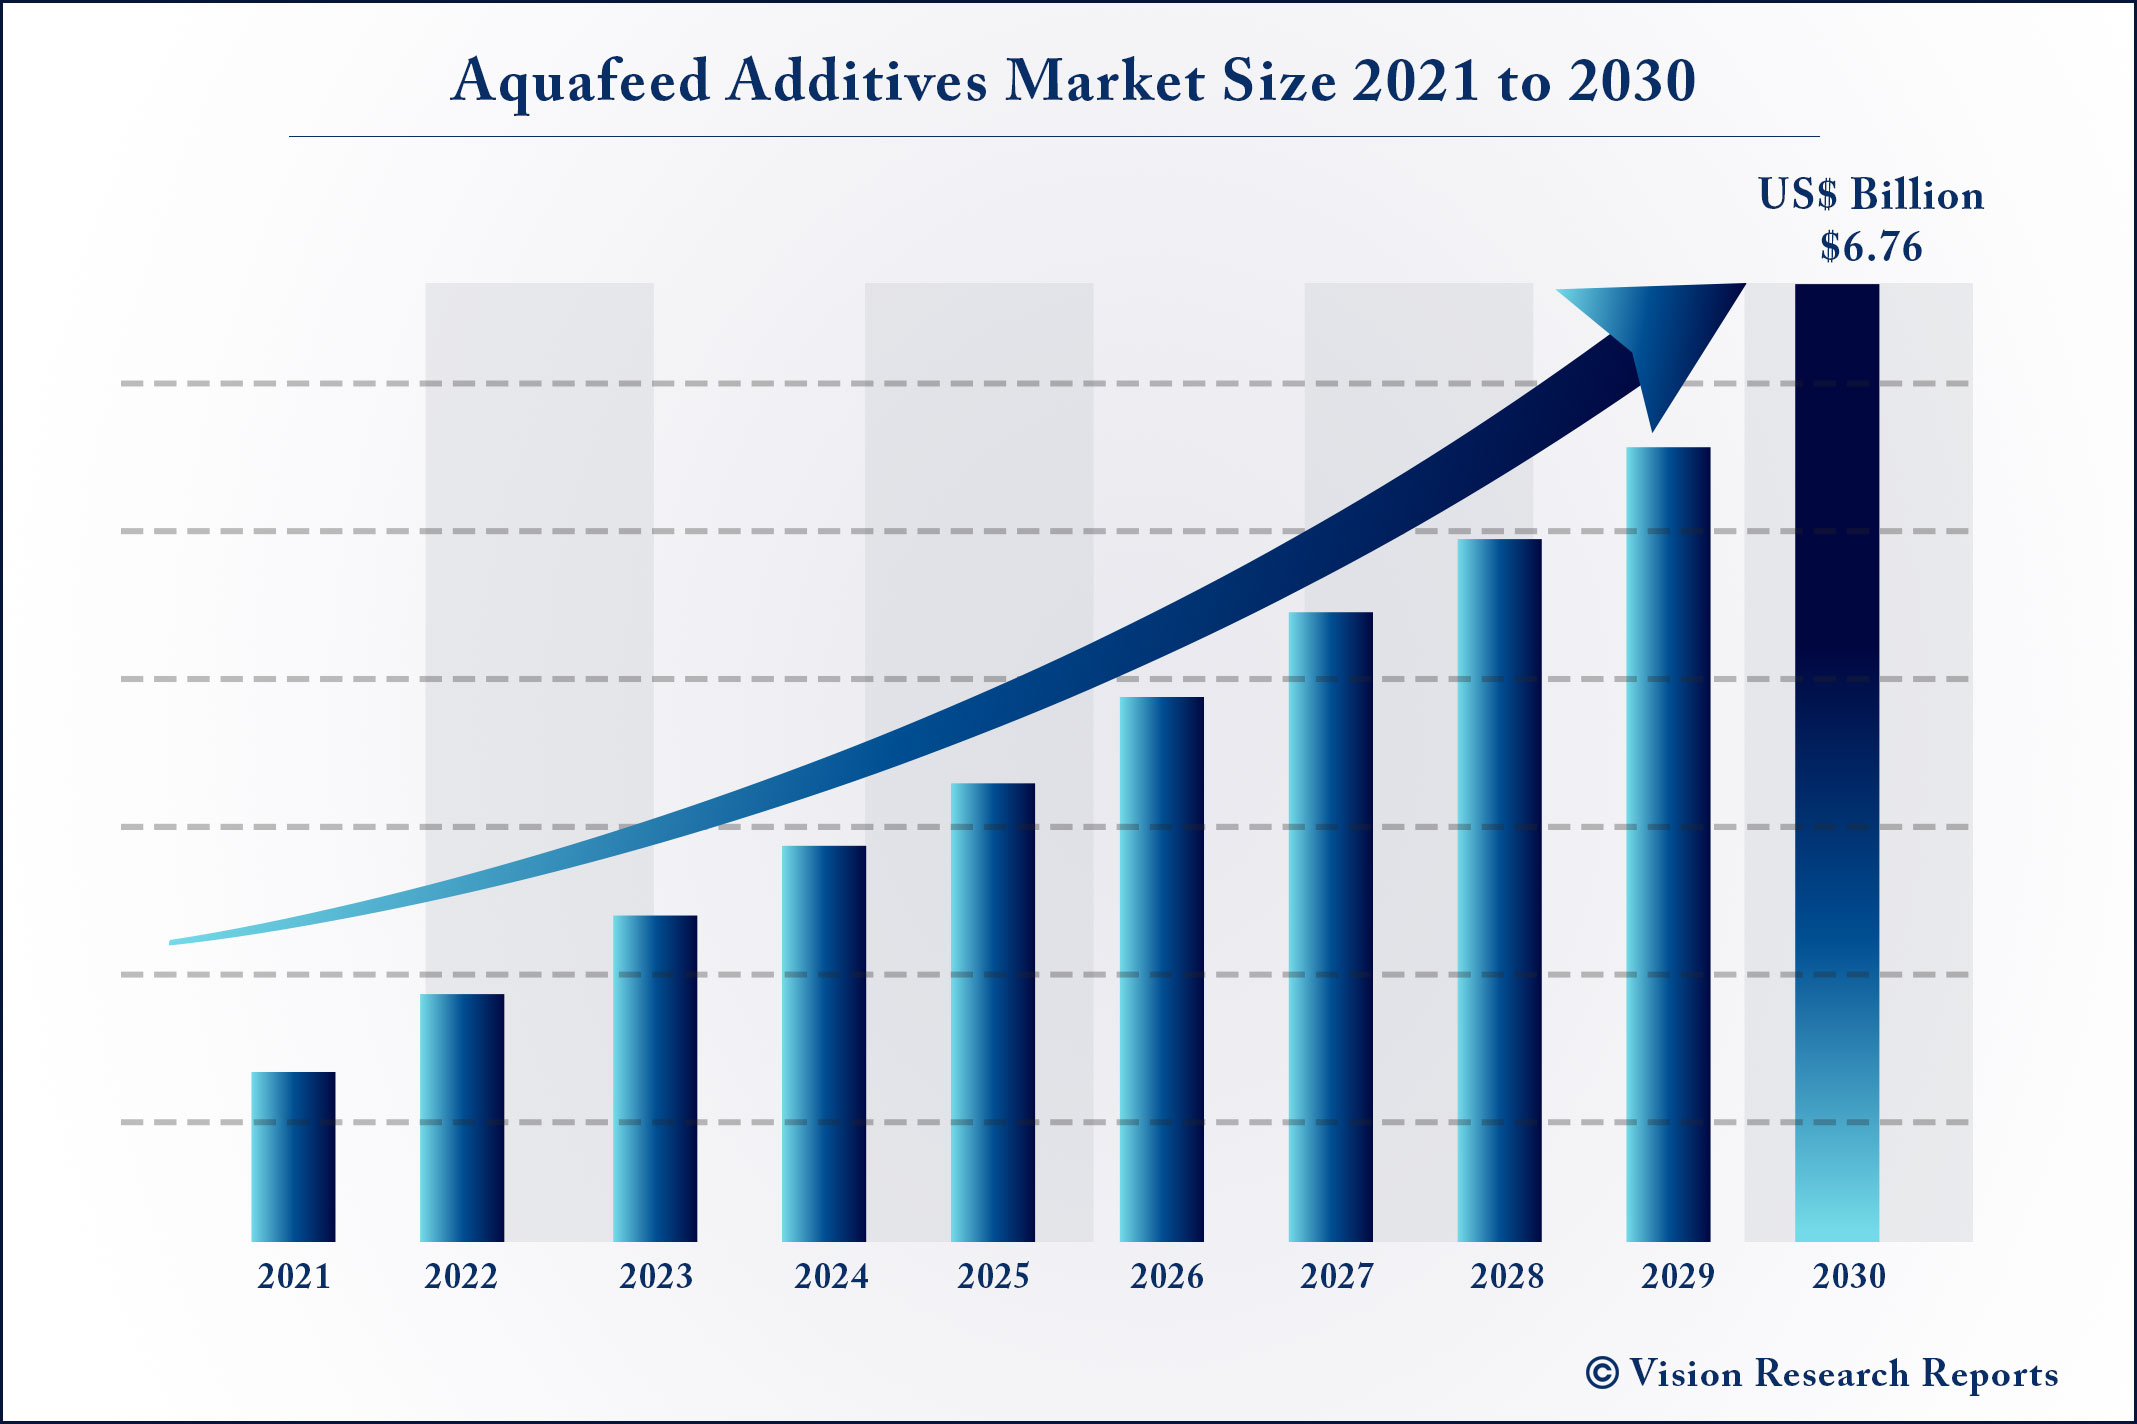 Aquafeed Additives Market Size 2021 to 2030